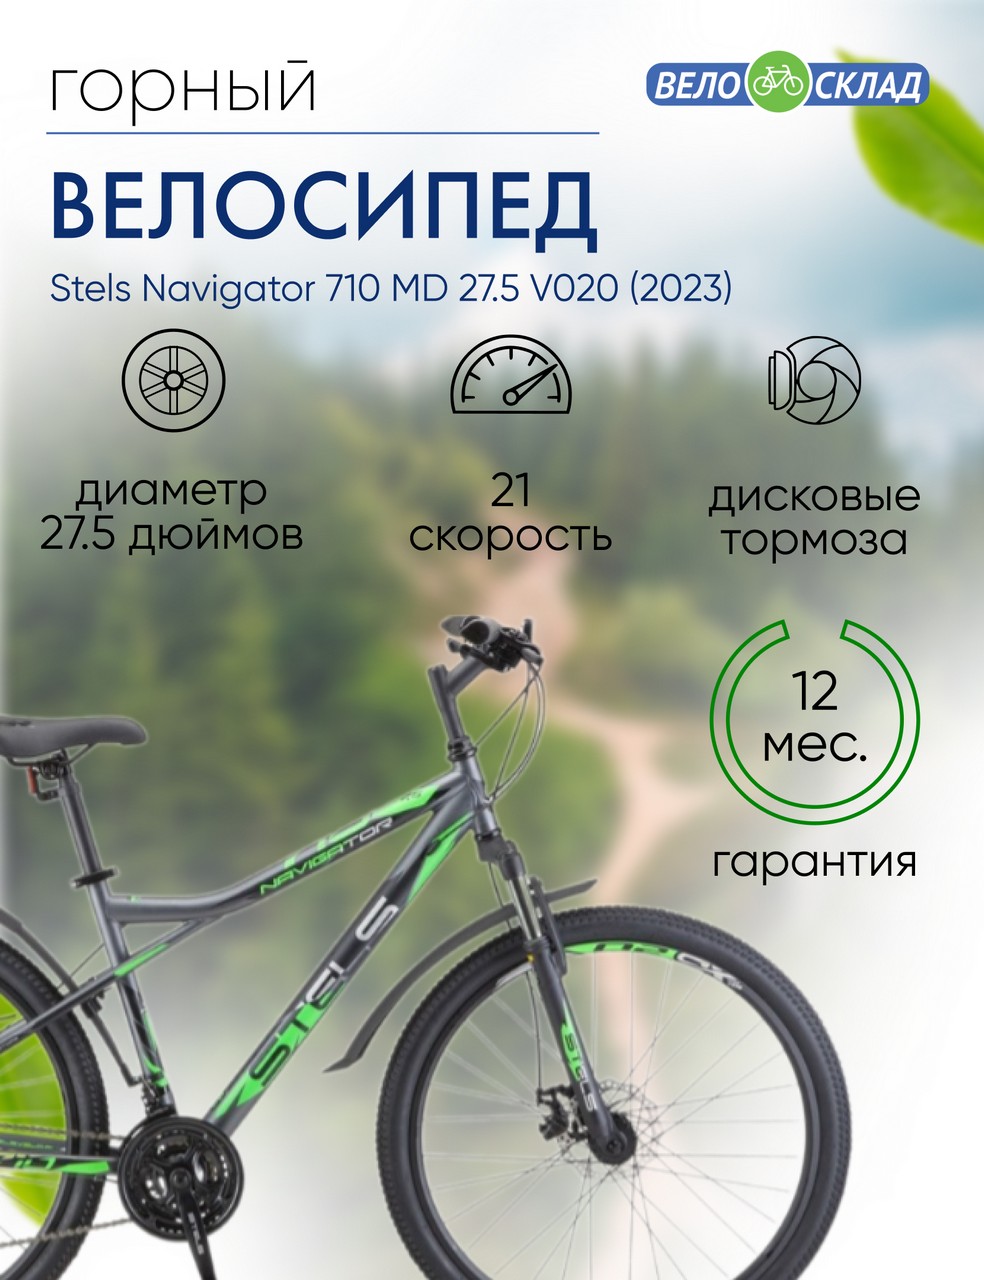 Горный велосипед Stels Navigator 710 MD 27.5 V020, год 2023, цвет Серебристый-Зеленый, ростовка 18